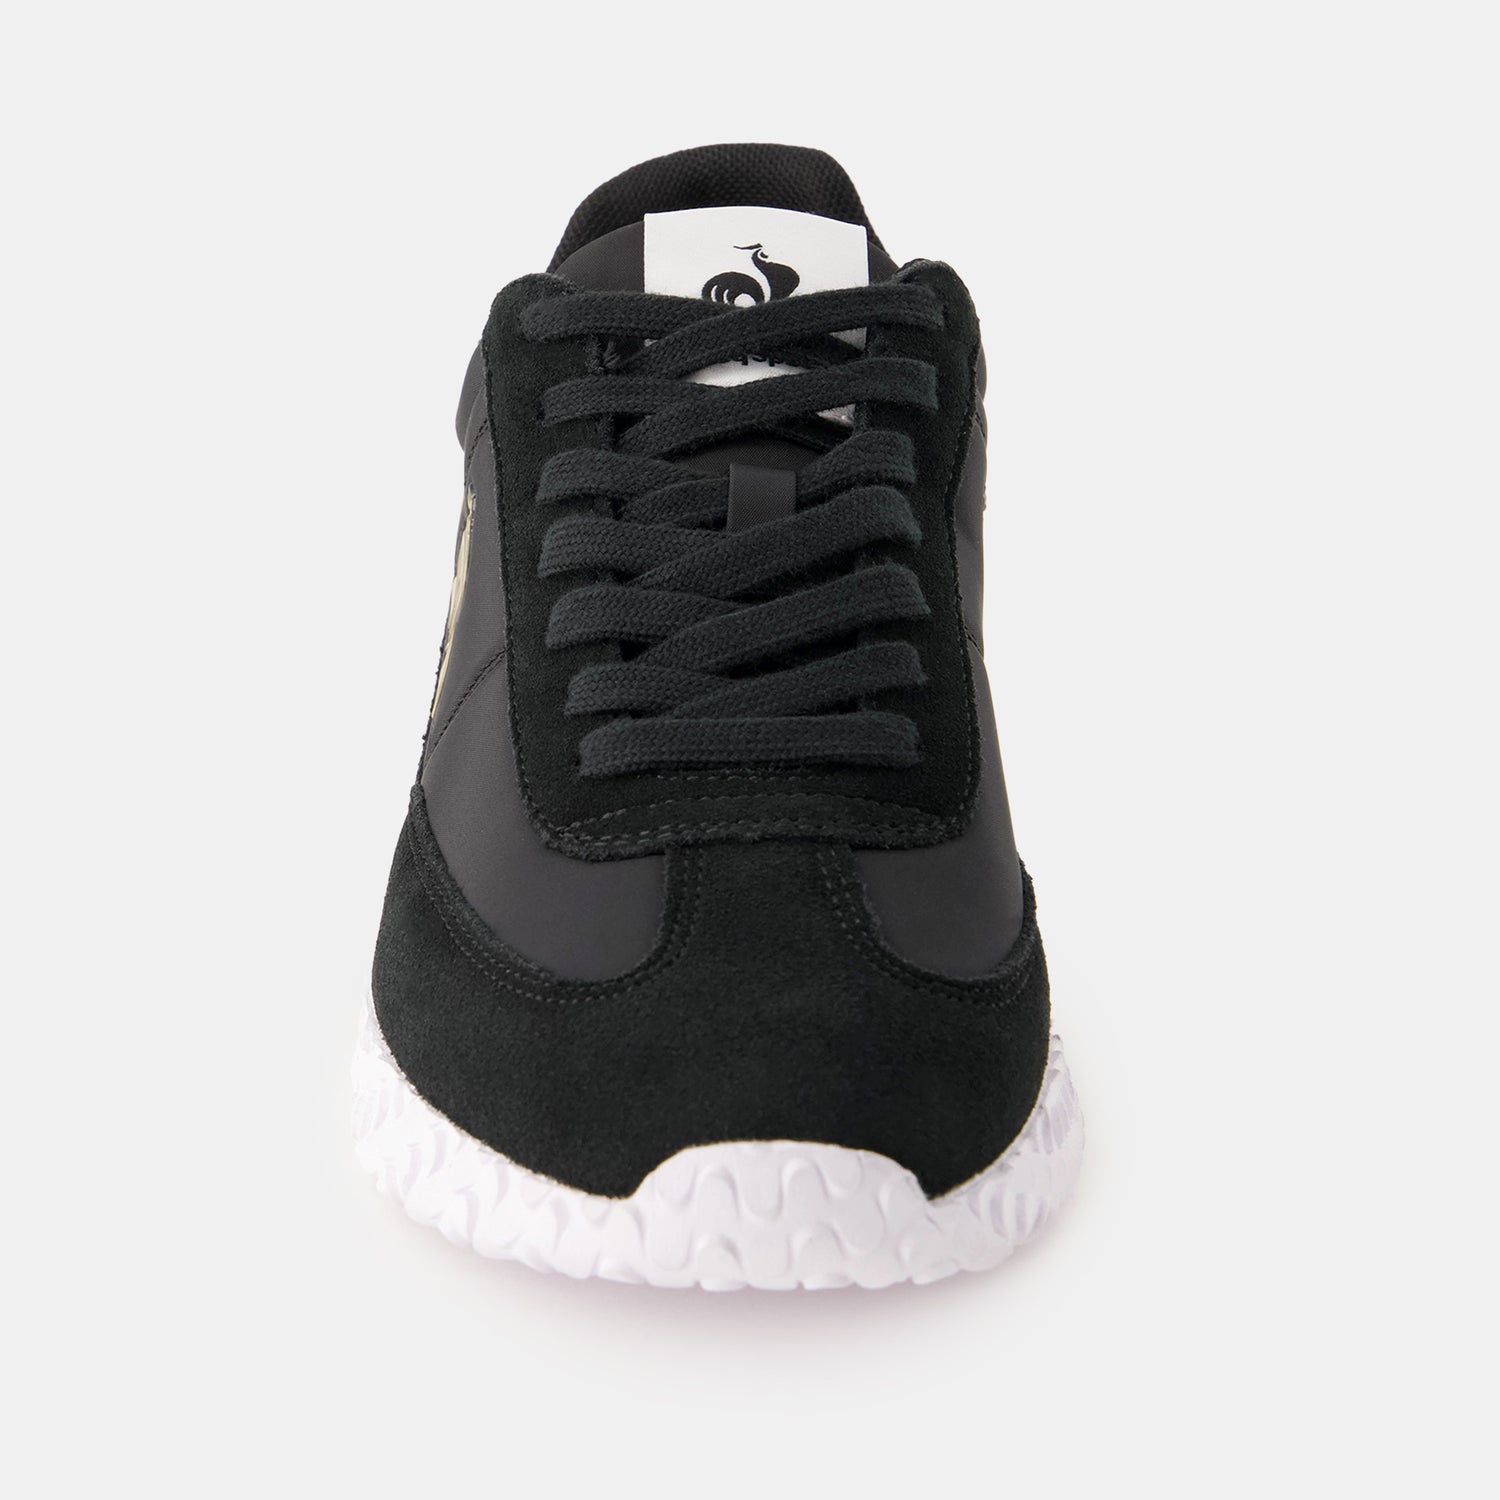 2410490-VELOCE I black/optical white  | Shoes VELOCE I Unisex